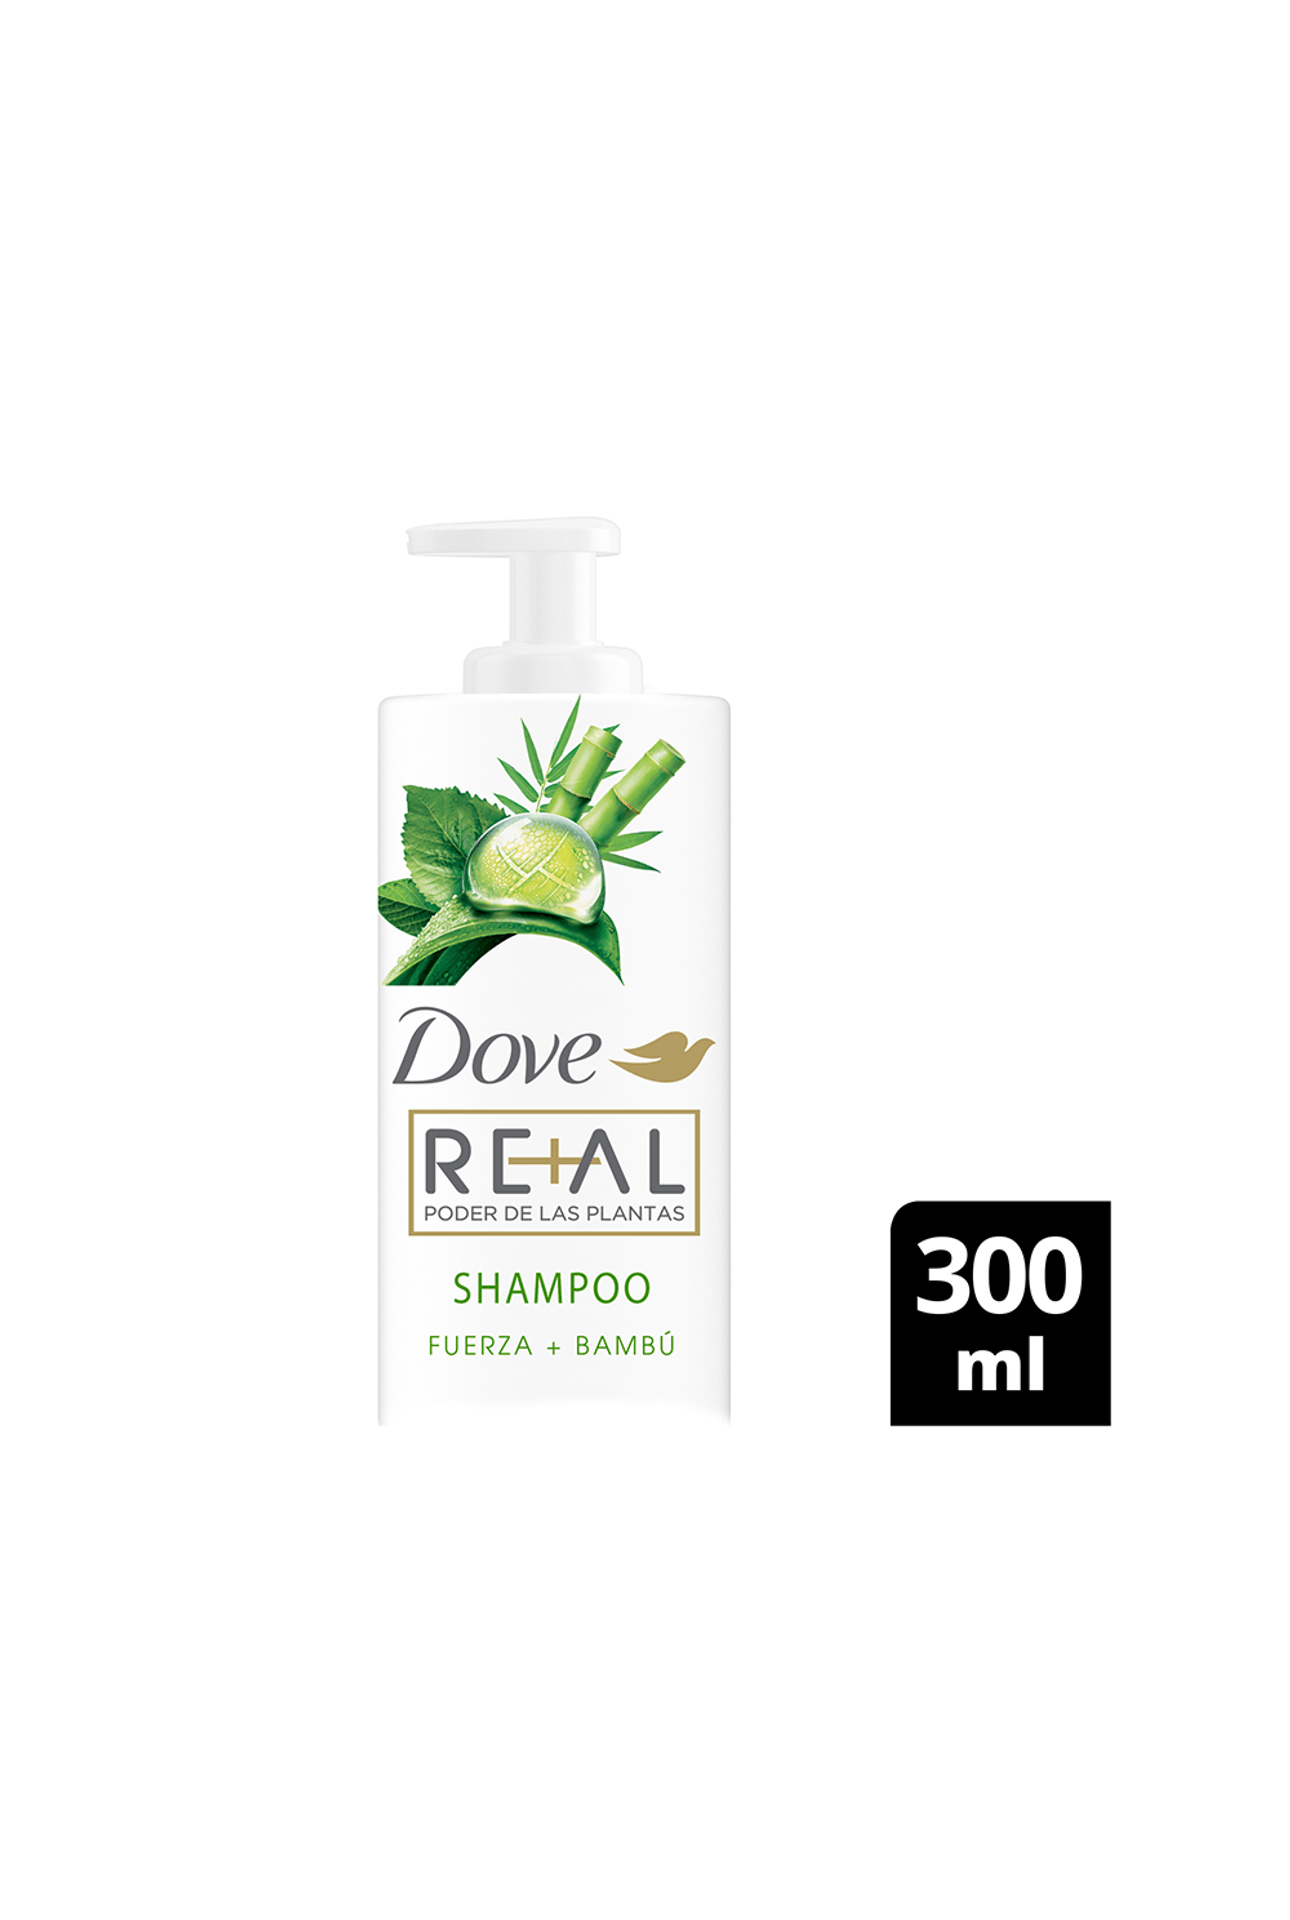 Dove-Shampoo-Dove-Fuerza-Bambu-x-300ml-7891150081062_img1